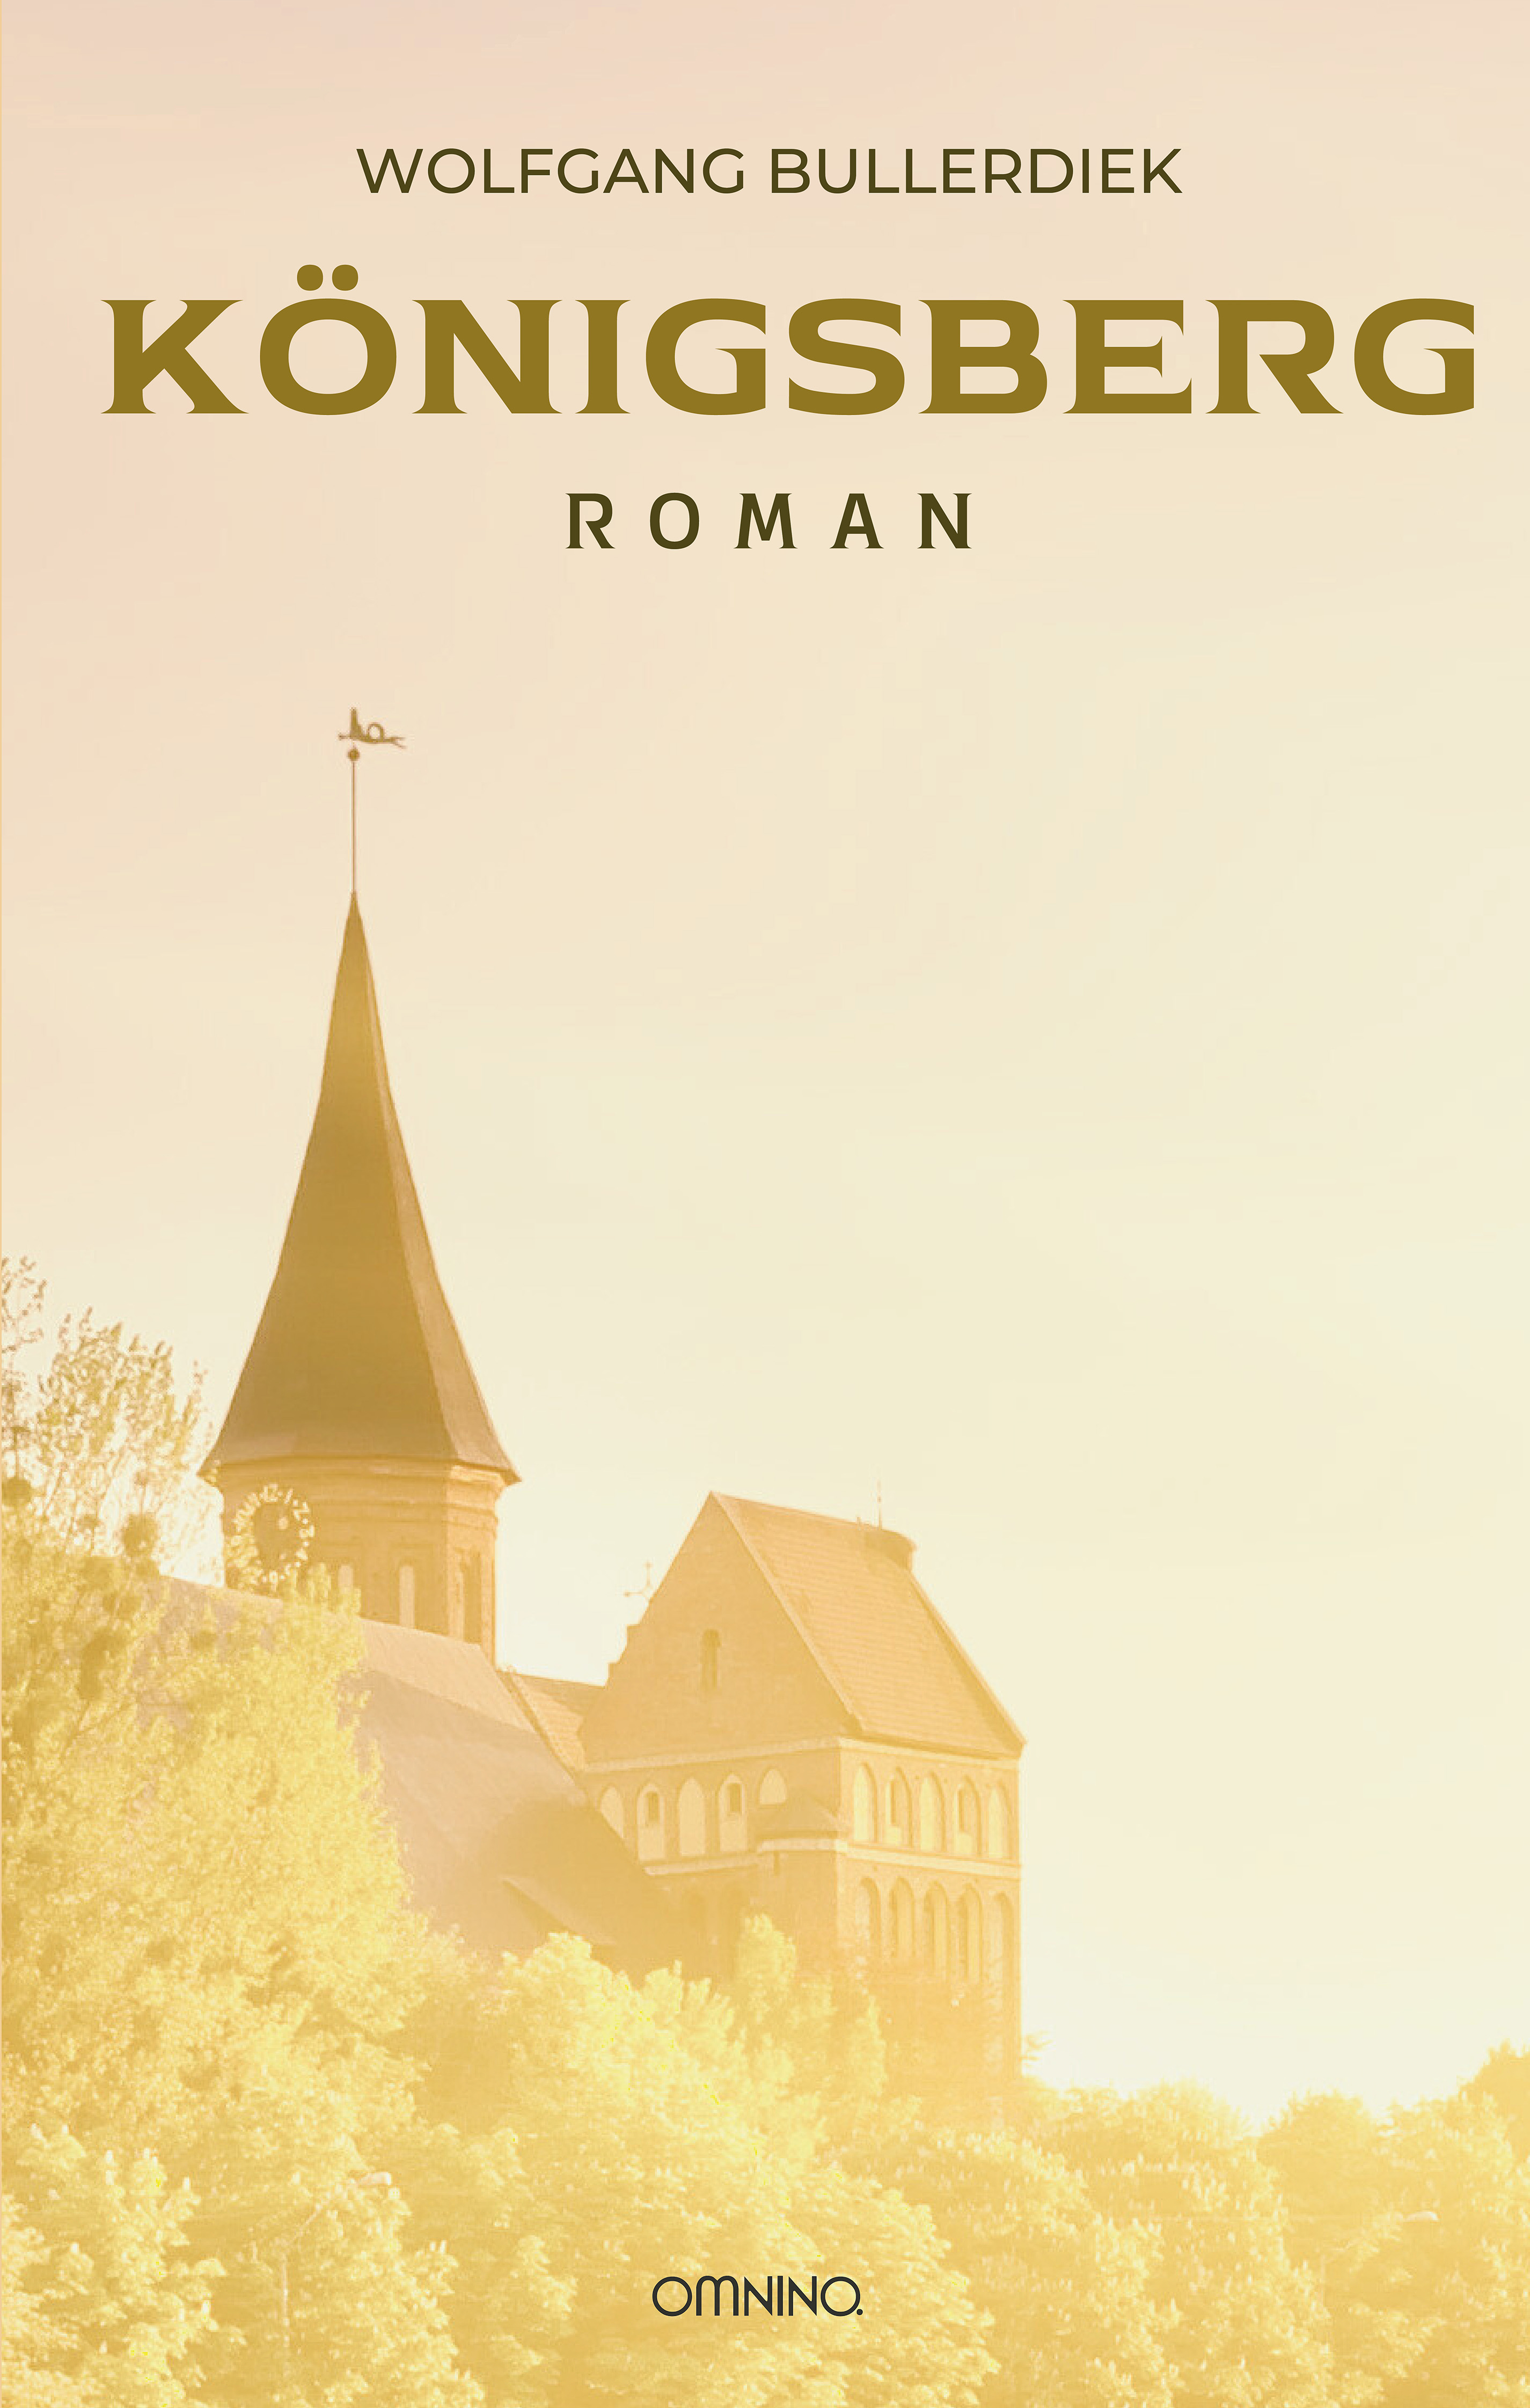 Königsberg: Roman. Ein Buch von Wolfgang Bullerdiek